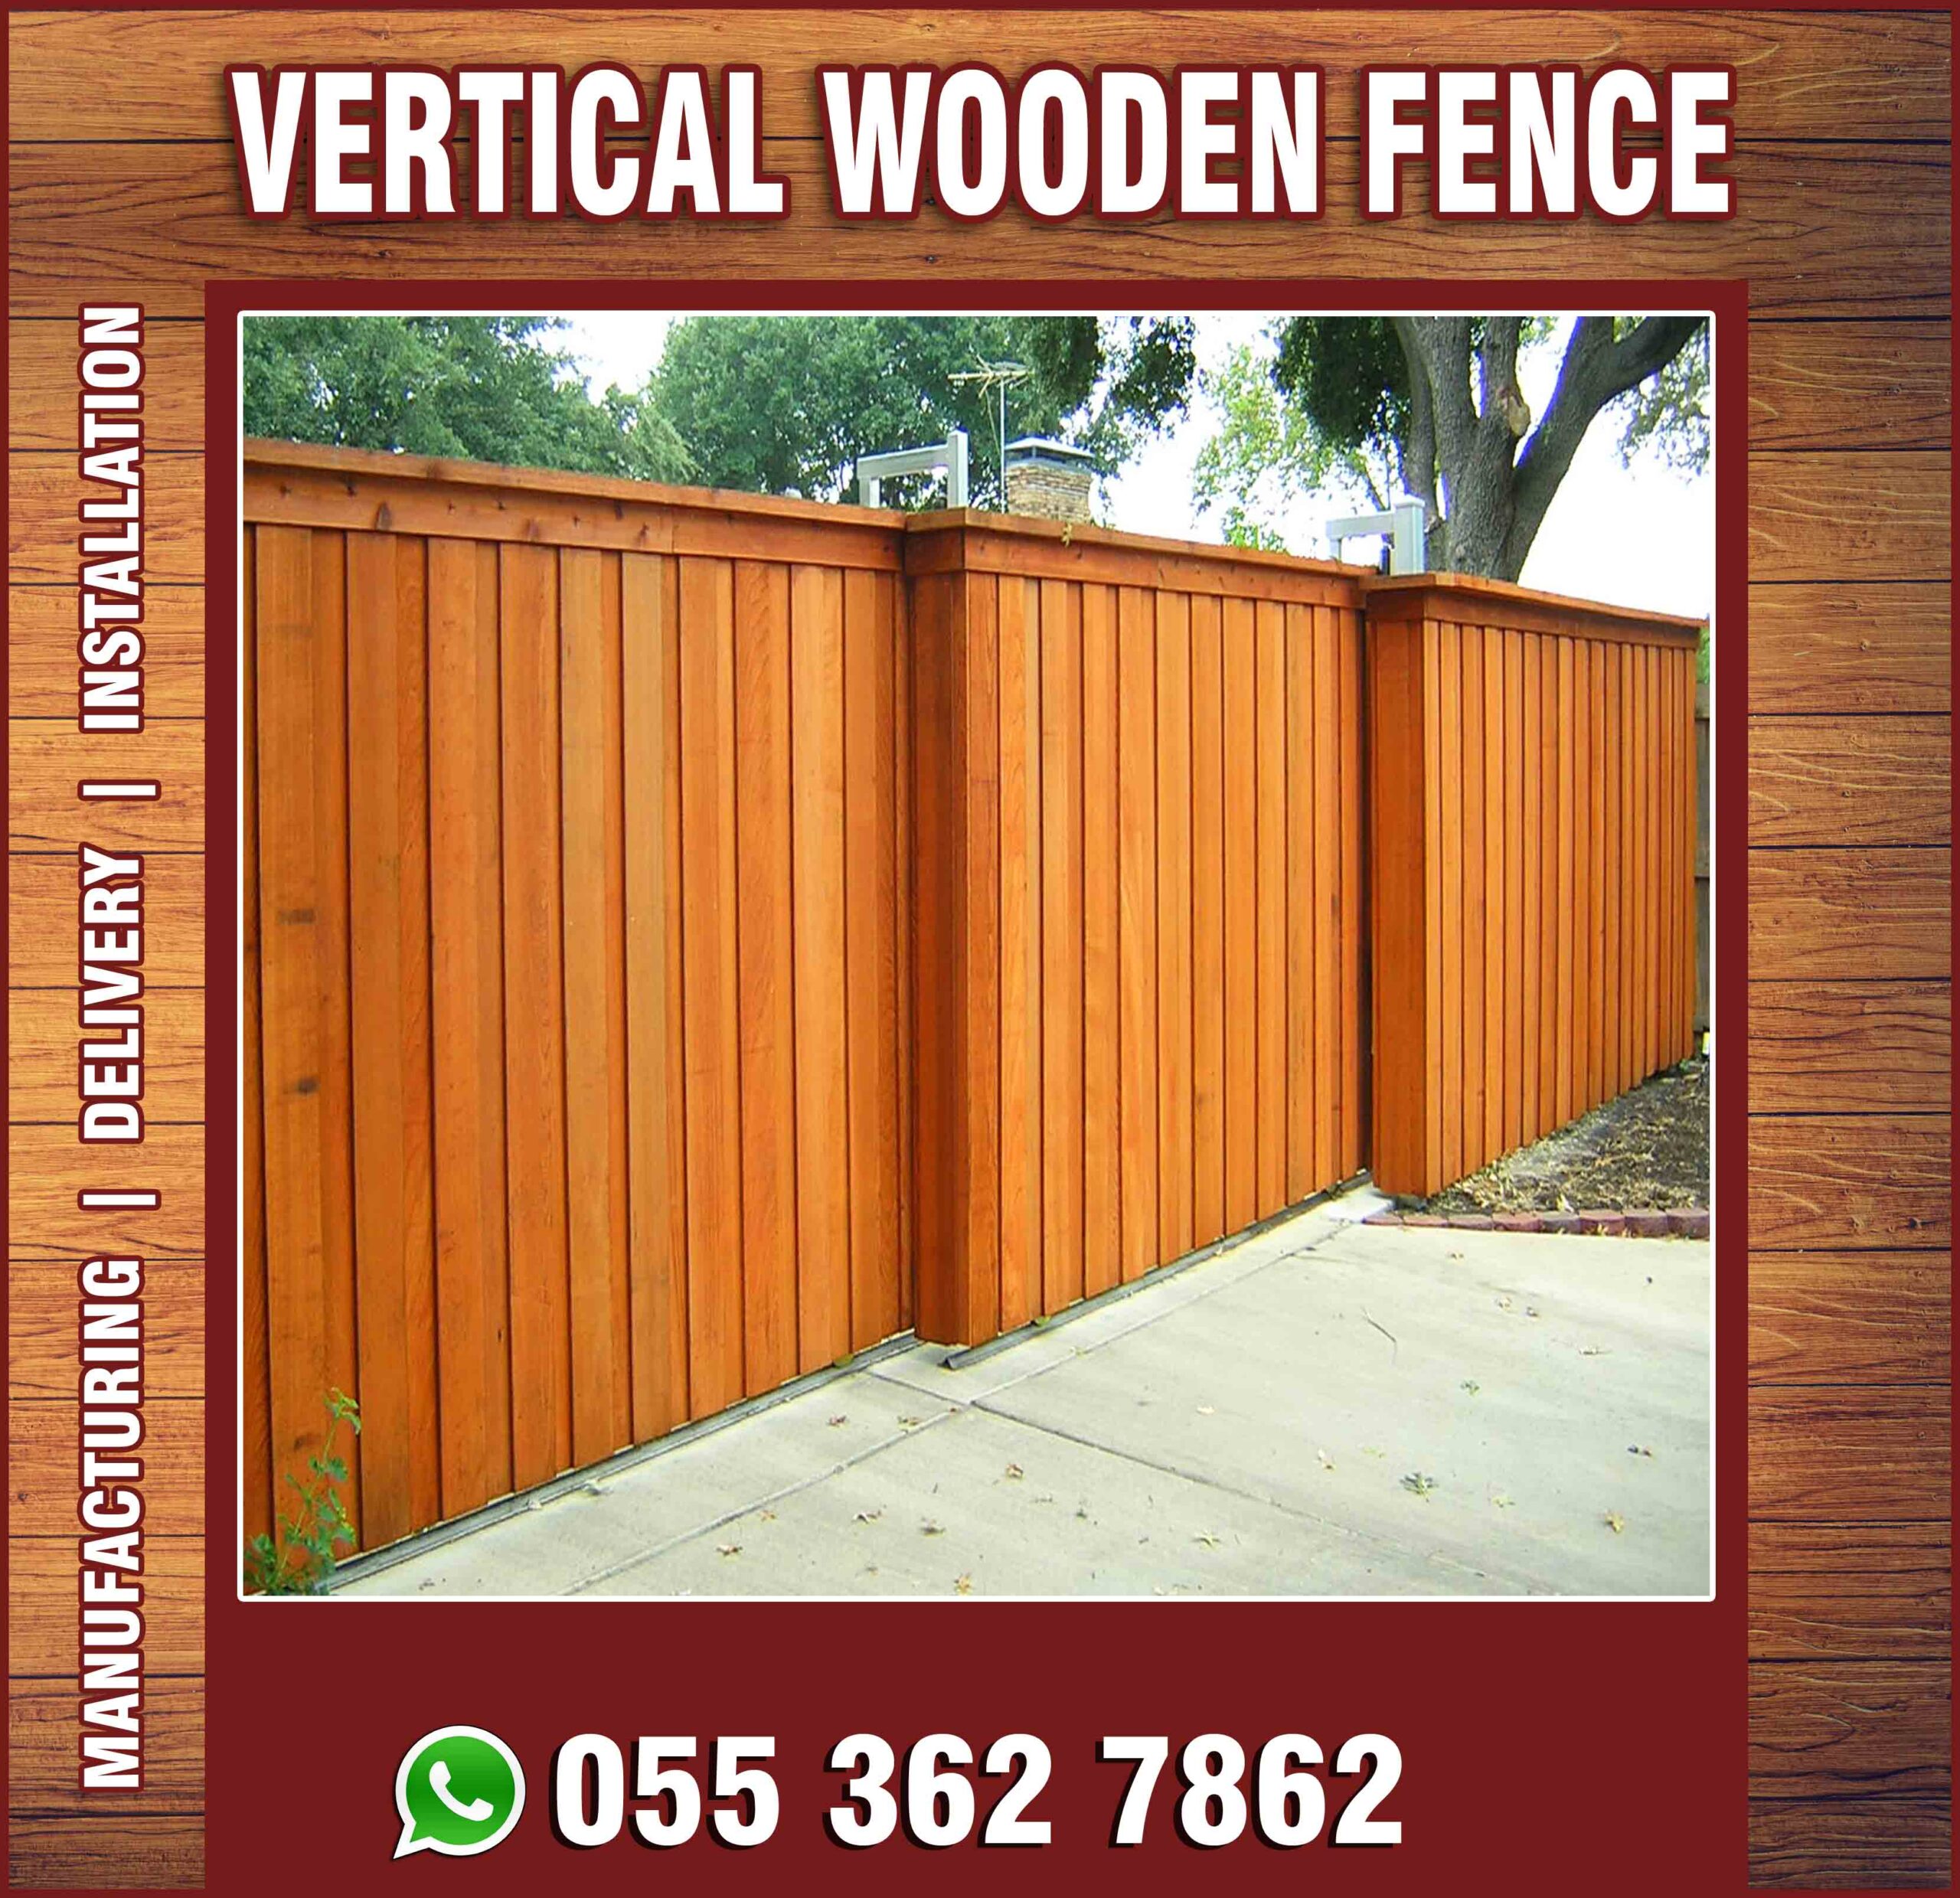 Vertical Wooden Fence in UAE.jpg